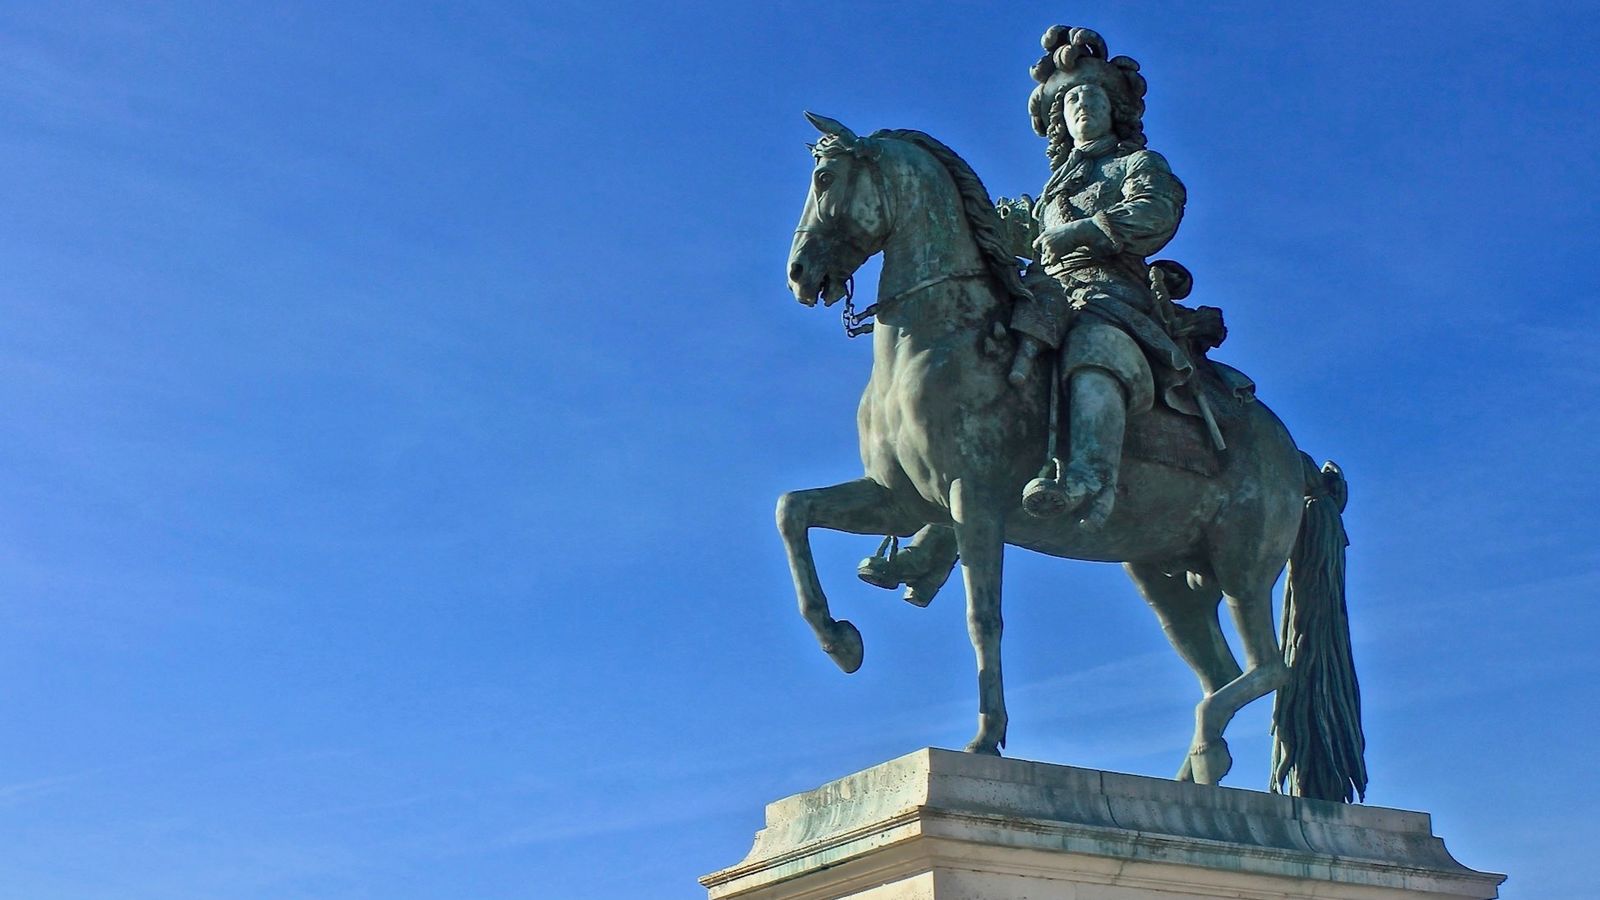 Préférez-vous la statue équestre de
Louis XIV ou les Tulipes de Koons ?